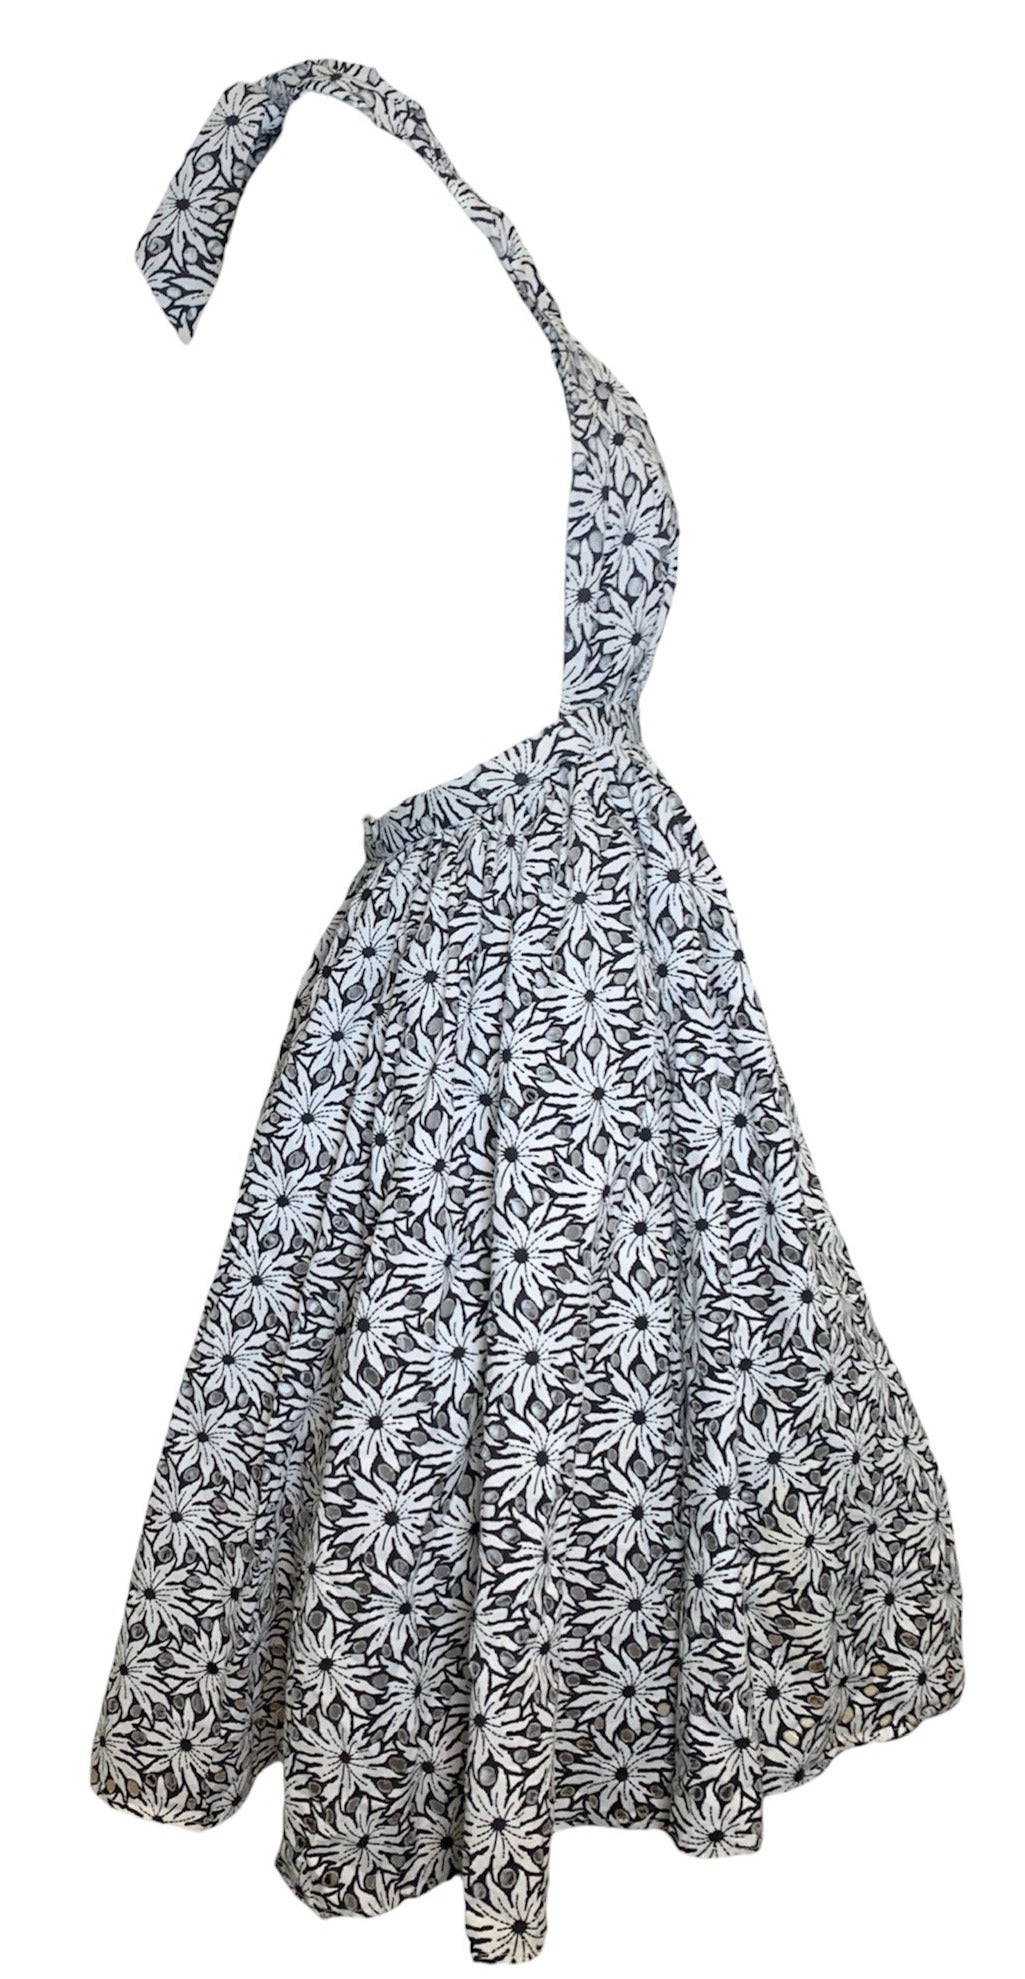 2010 Gaultier for Target Black & White Floral Halter Dress SIDE 2 of 5